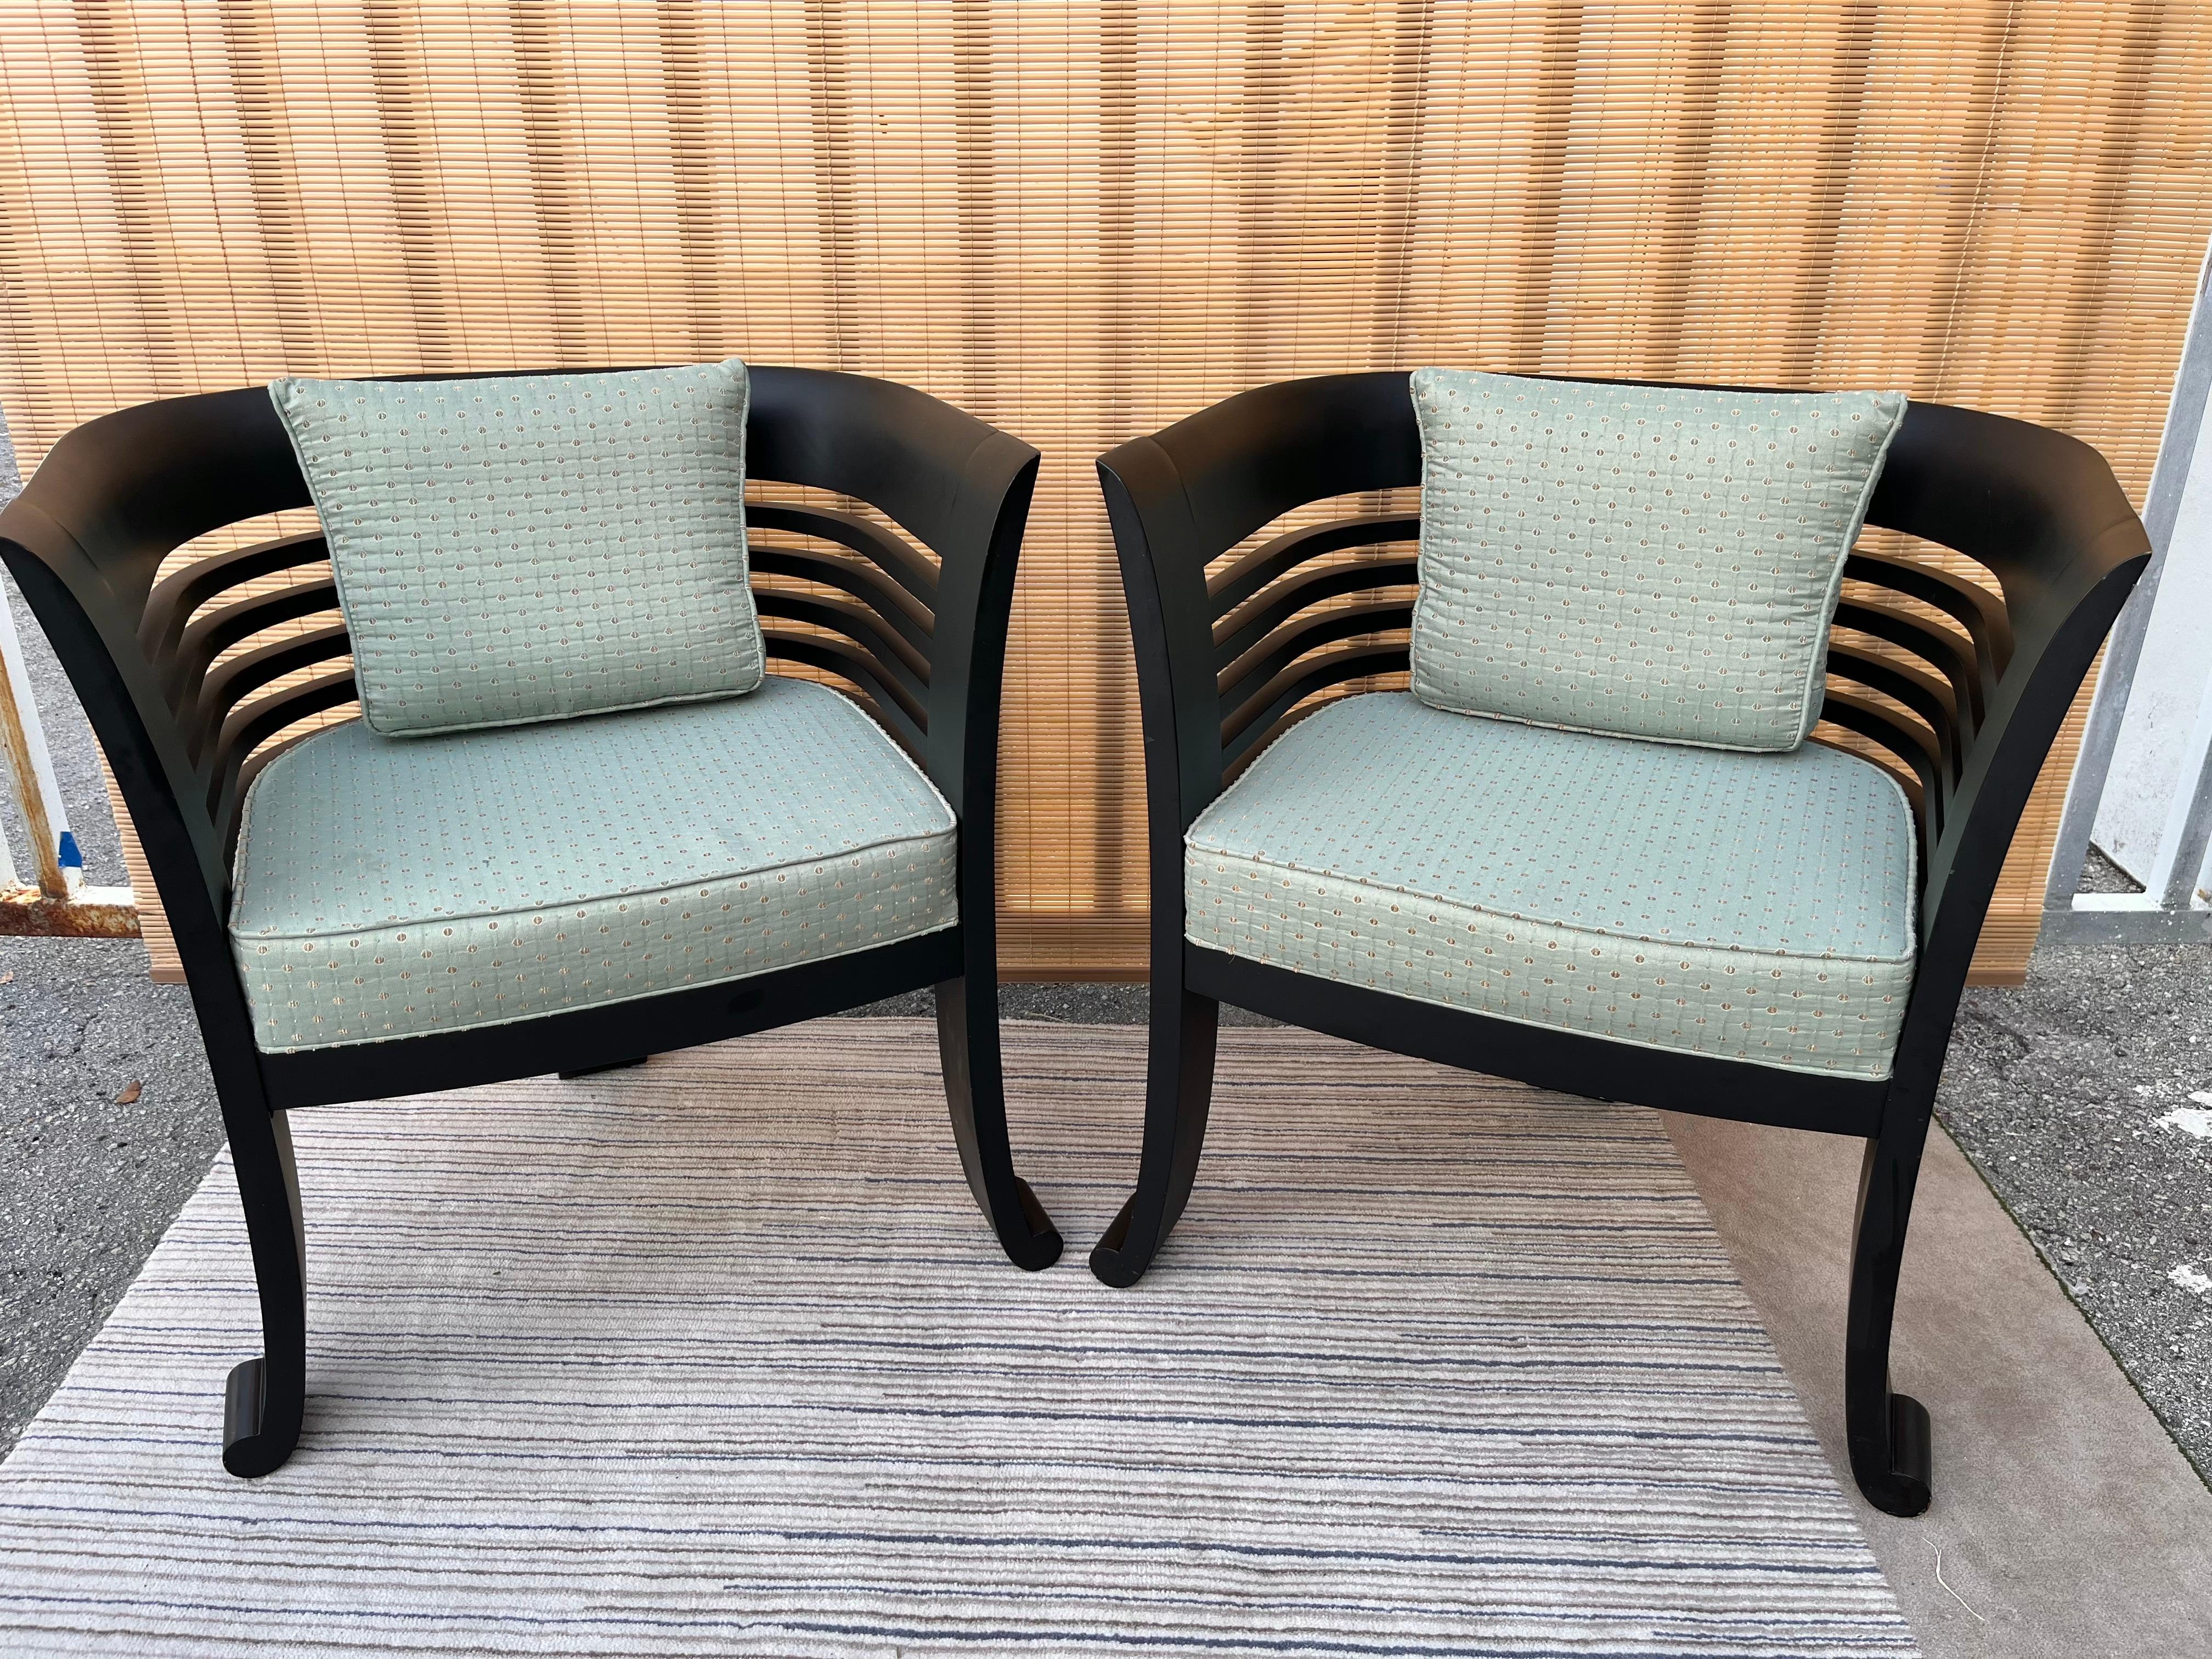 Ein Paar Lounge-Dreibein-Stühle des frühen 21. Jahrhunderts von Westlake Furniture Chicago. Datiert auf das Jahr 2000 
Der Stil ist von der Chinoiserie inspiriert, mit Baumbeinen und abgerundeter Rückenlehne. 
In ausgezeichnetem Zustand mit sehr